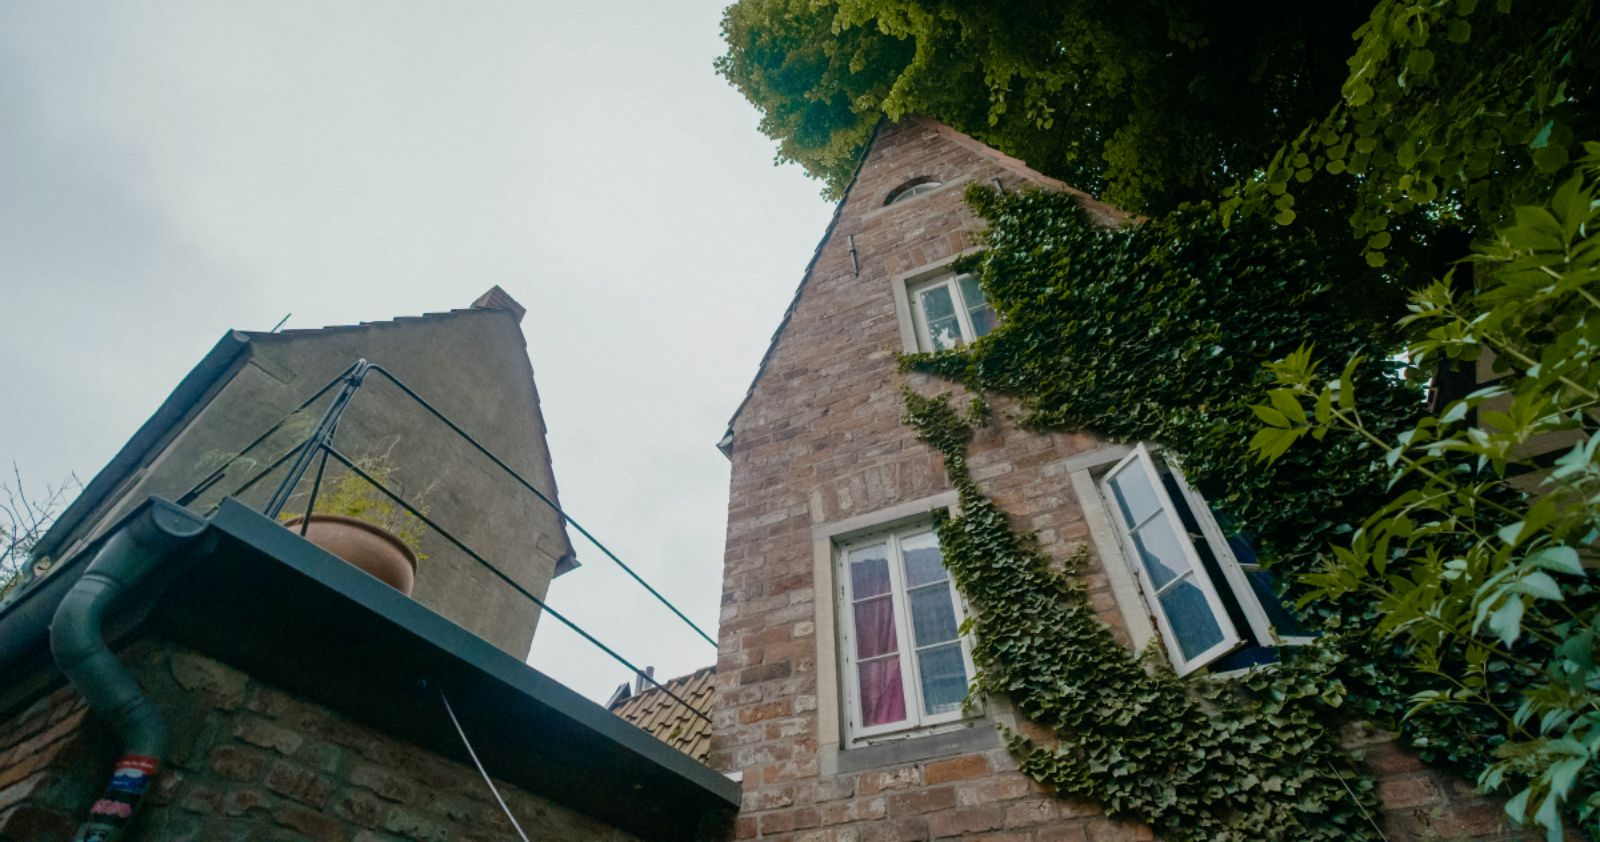 Dachterrasse auf dem kleinsten Haus Deustchlands. Urlaub in Bremen bei LDGG. Fynn Kliemann kauf außergewöhnliche Häuser und baut sie zu Ferienwohnungen um.